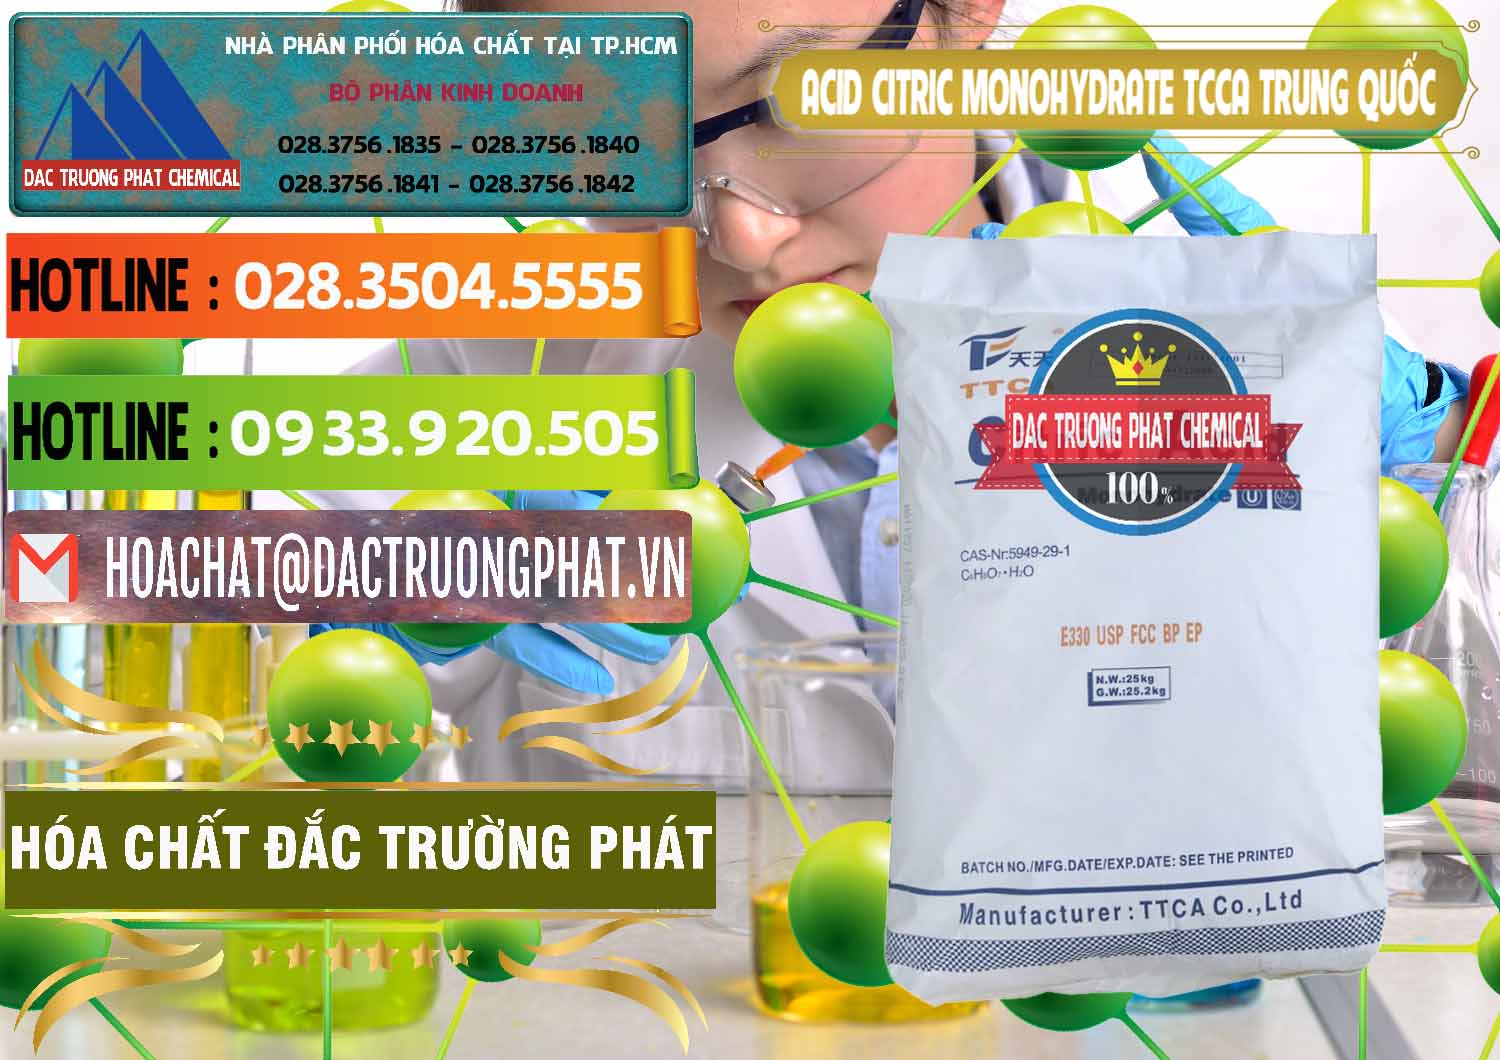 Chuyên kinh doanh & bán Acid Citric - Axit Citric Monohydrate TCCA Trung Quốc China - 0441 - Cty cung cấp _ bán hóa chất tại TP.HCM - cungcaphoachat.com.vn